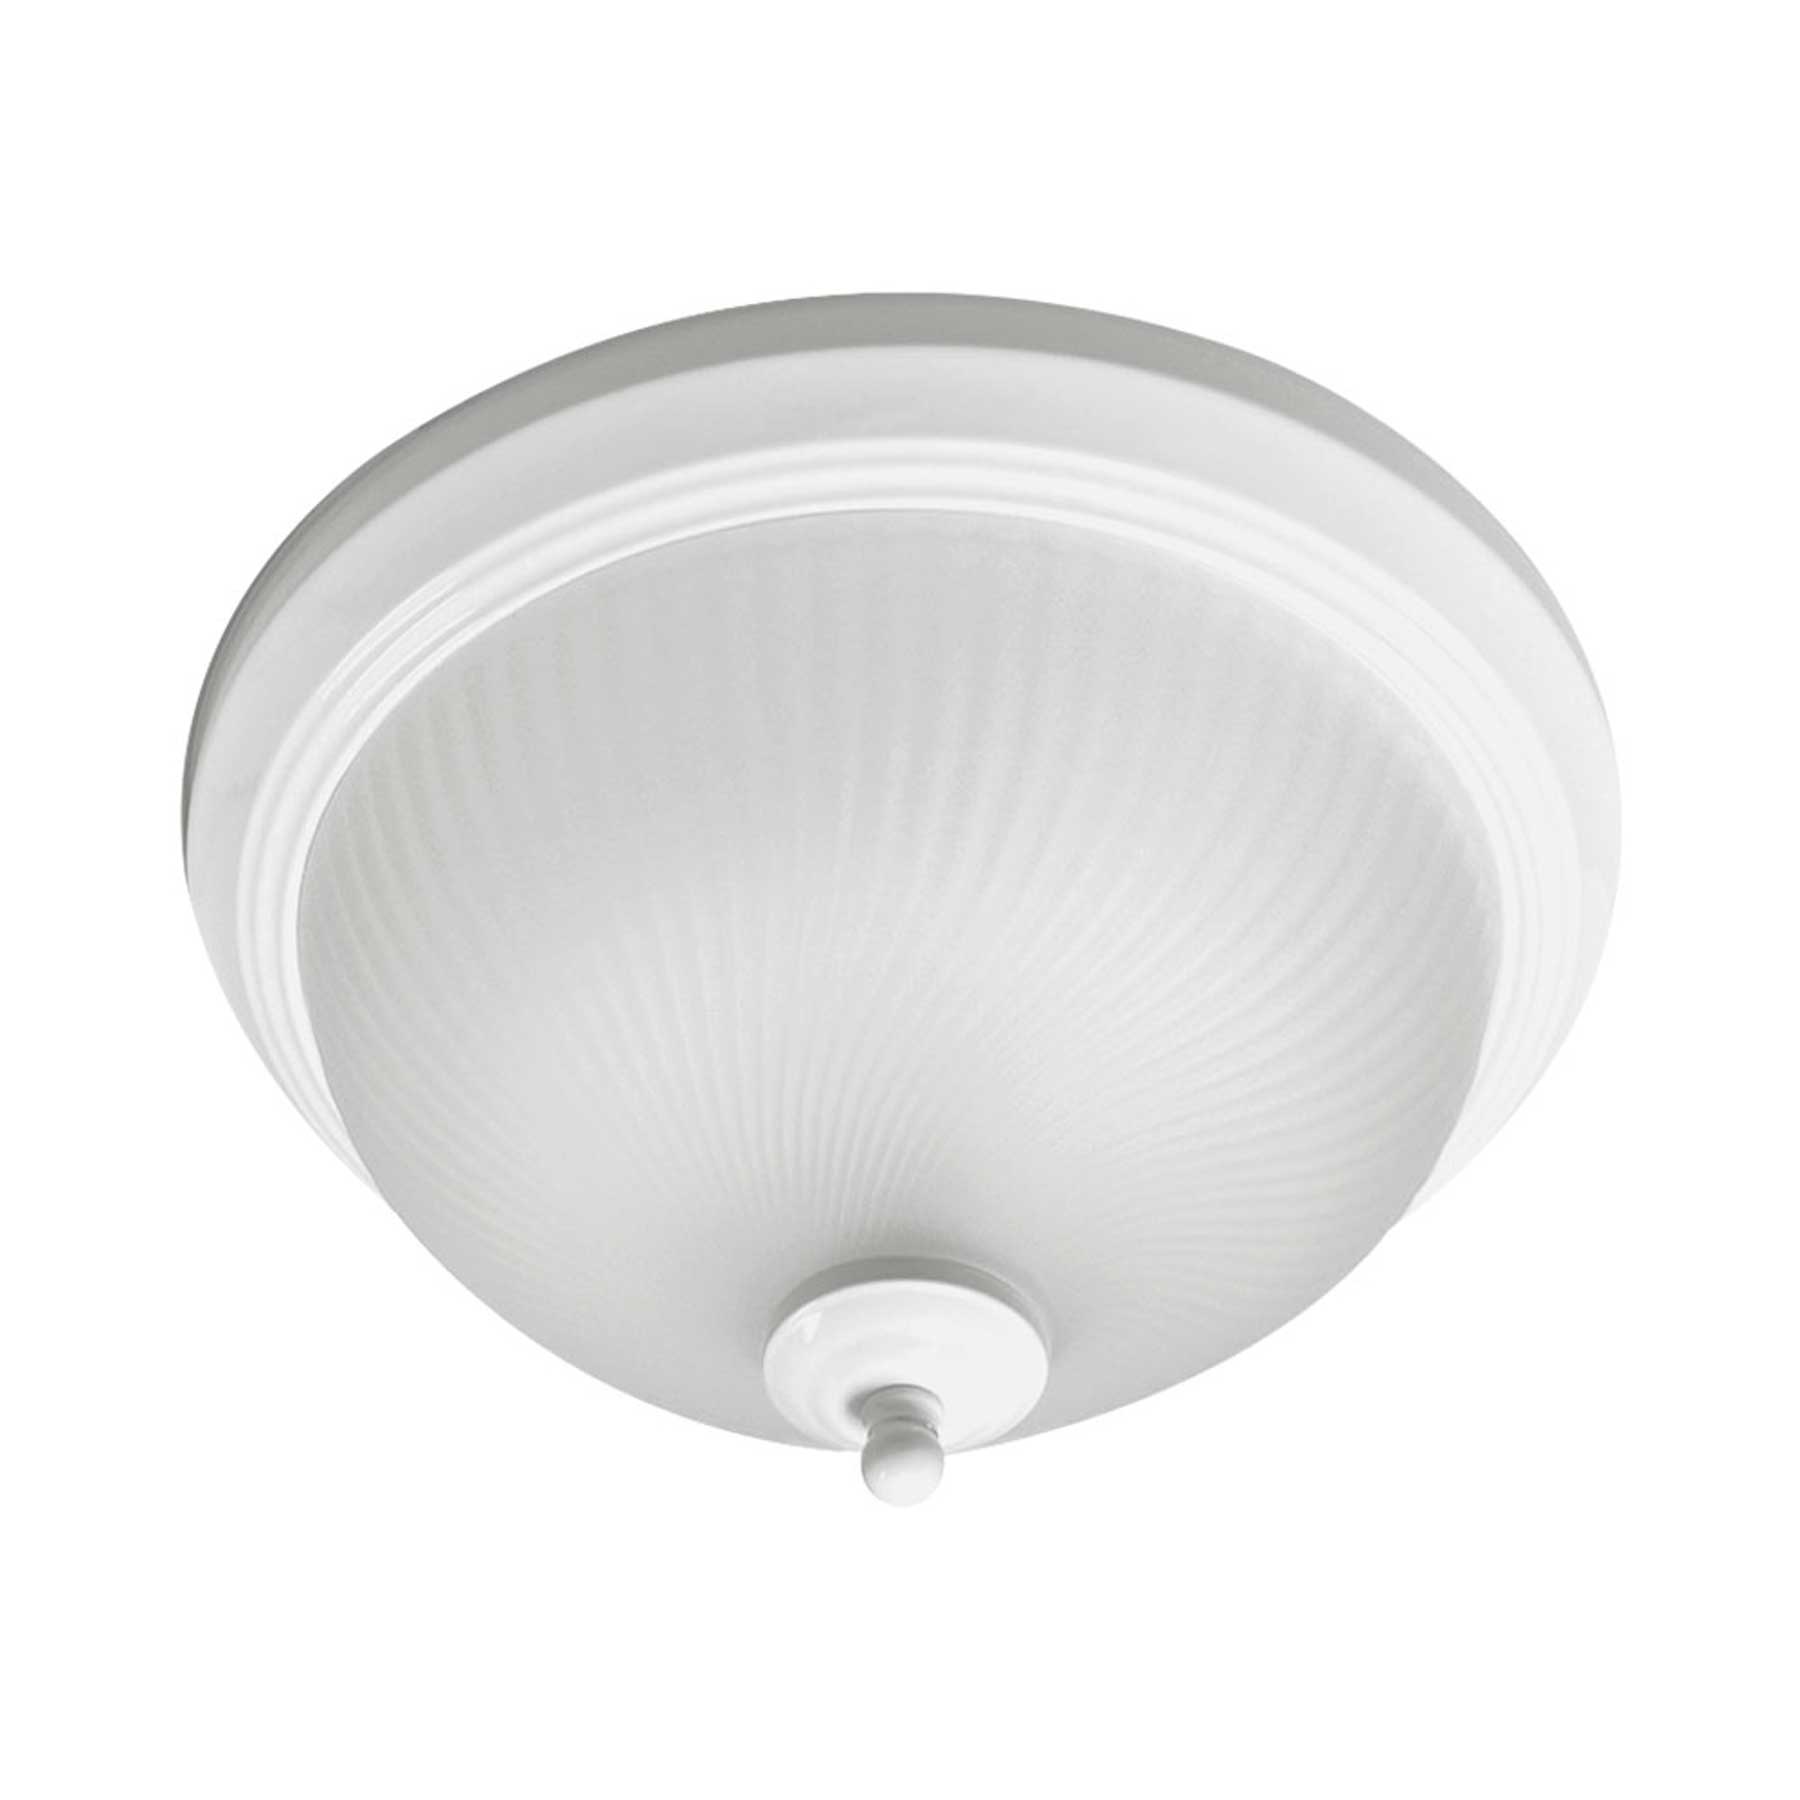 Viribright - 13 in. Flush Mount LED Ceiling Light Fixture, Matte White - 450014